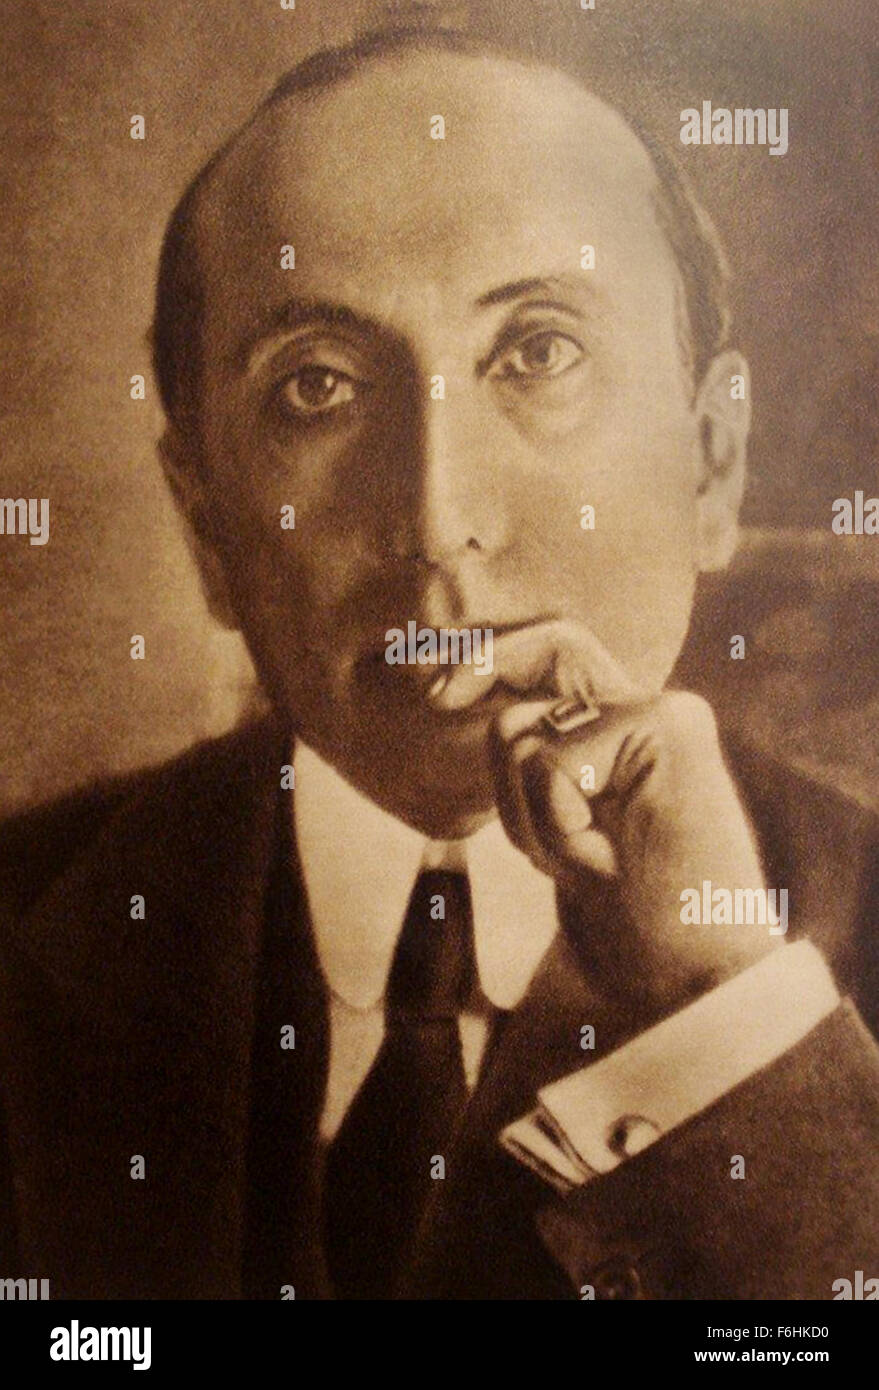 Amado Nervo (Agosto 27, 1870 - 24 Maggio 1919) fu un poeta messicano, giornalista ed educatore. Foto Stock